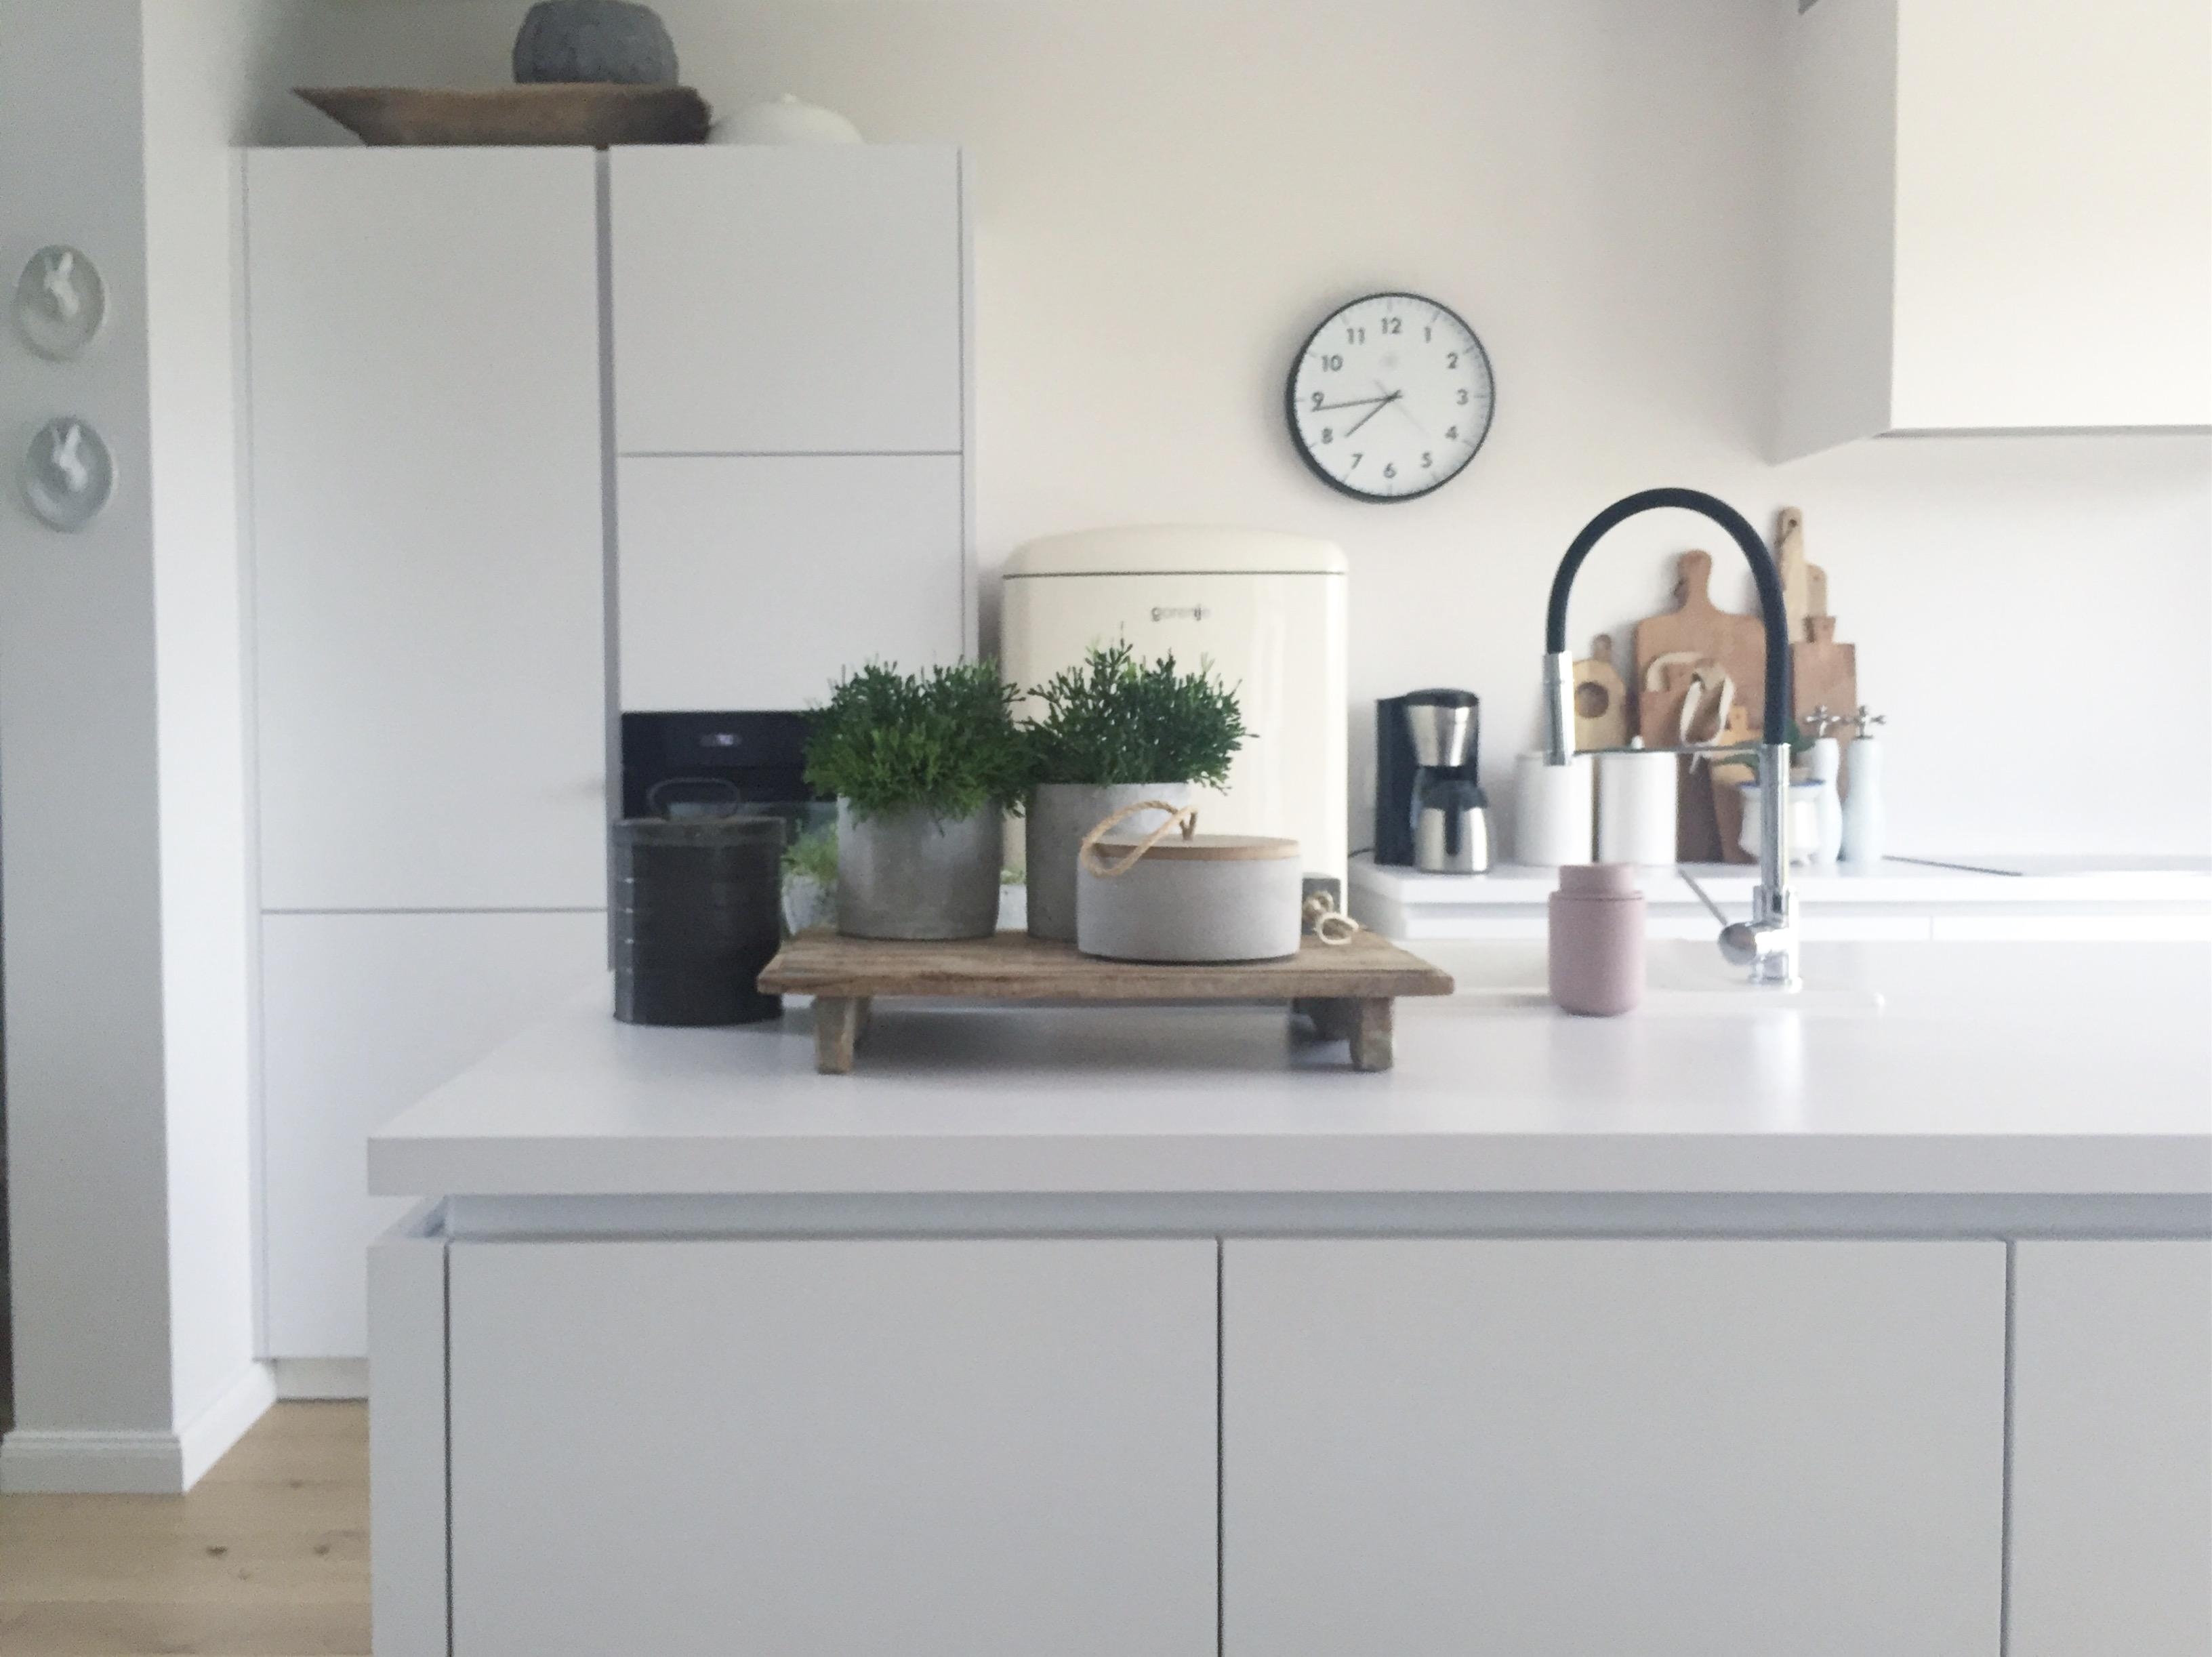 Kleines -hallo- aus der #Küche
#white #kitchen #couchliebt #interior #interiorinspiration #inthekitchen #kitchenstories